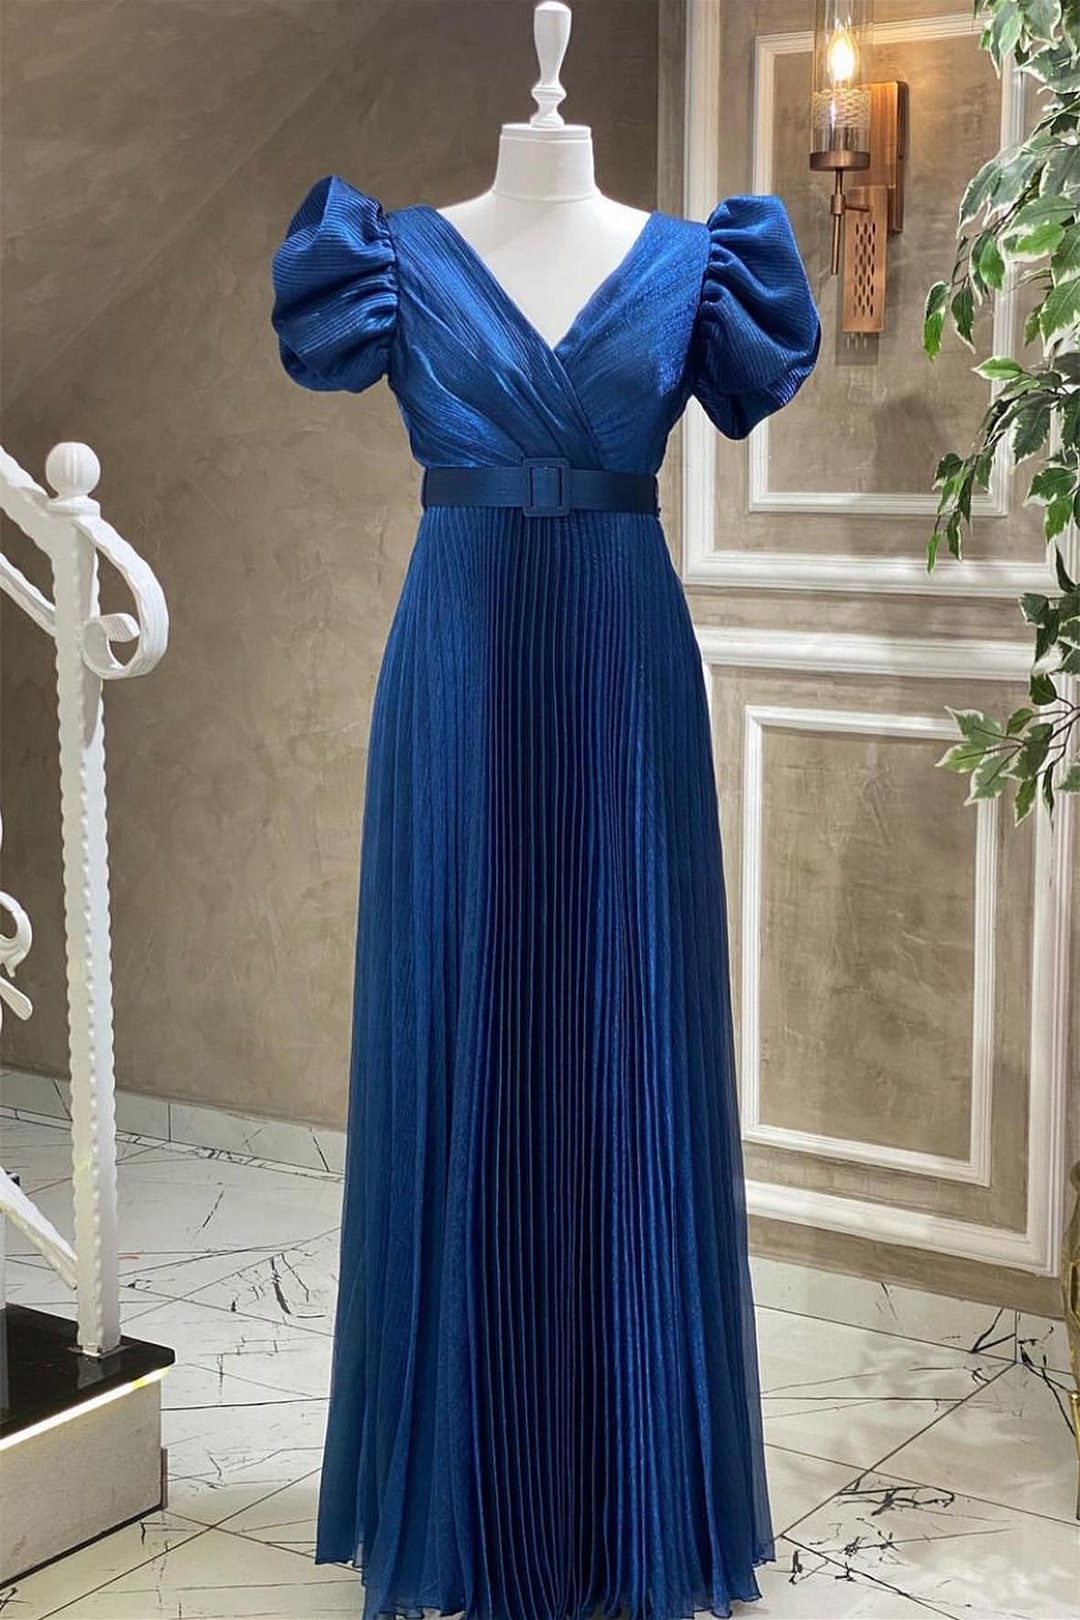 Royal Blue V-Neck Evening Dress Short Sleeves With Belt Online ED0313